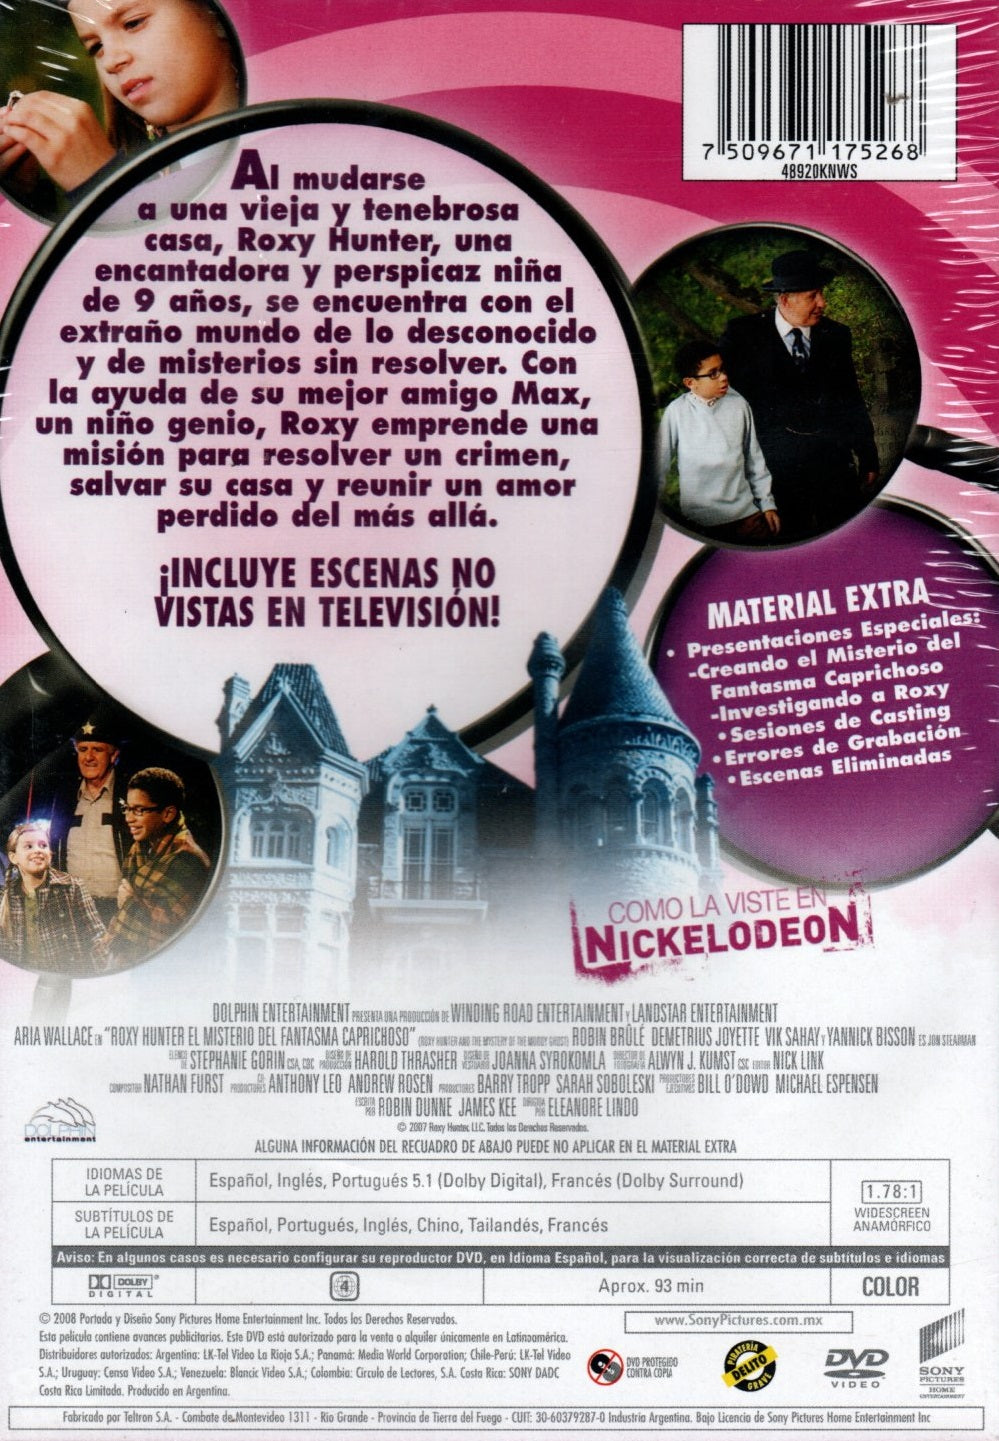 DVD ROXY HUNTER Y EL MISTERIO DEL FANTASMA CAPRICHOSO